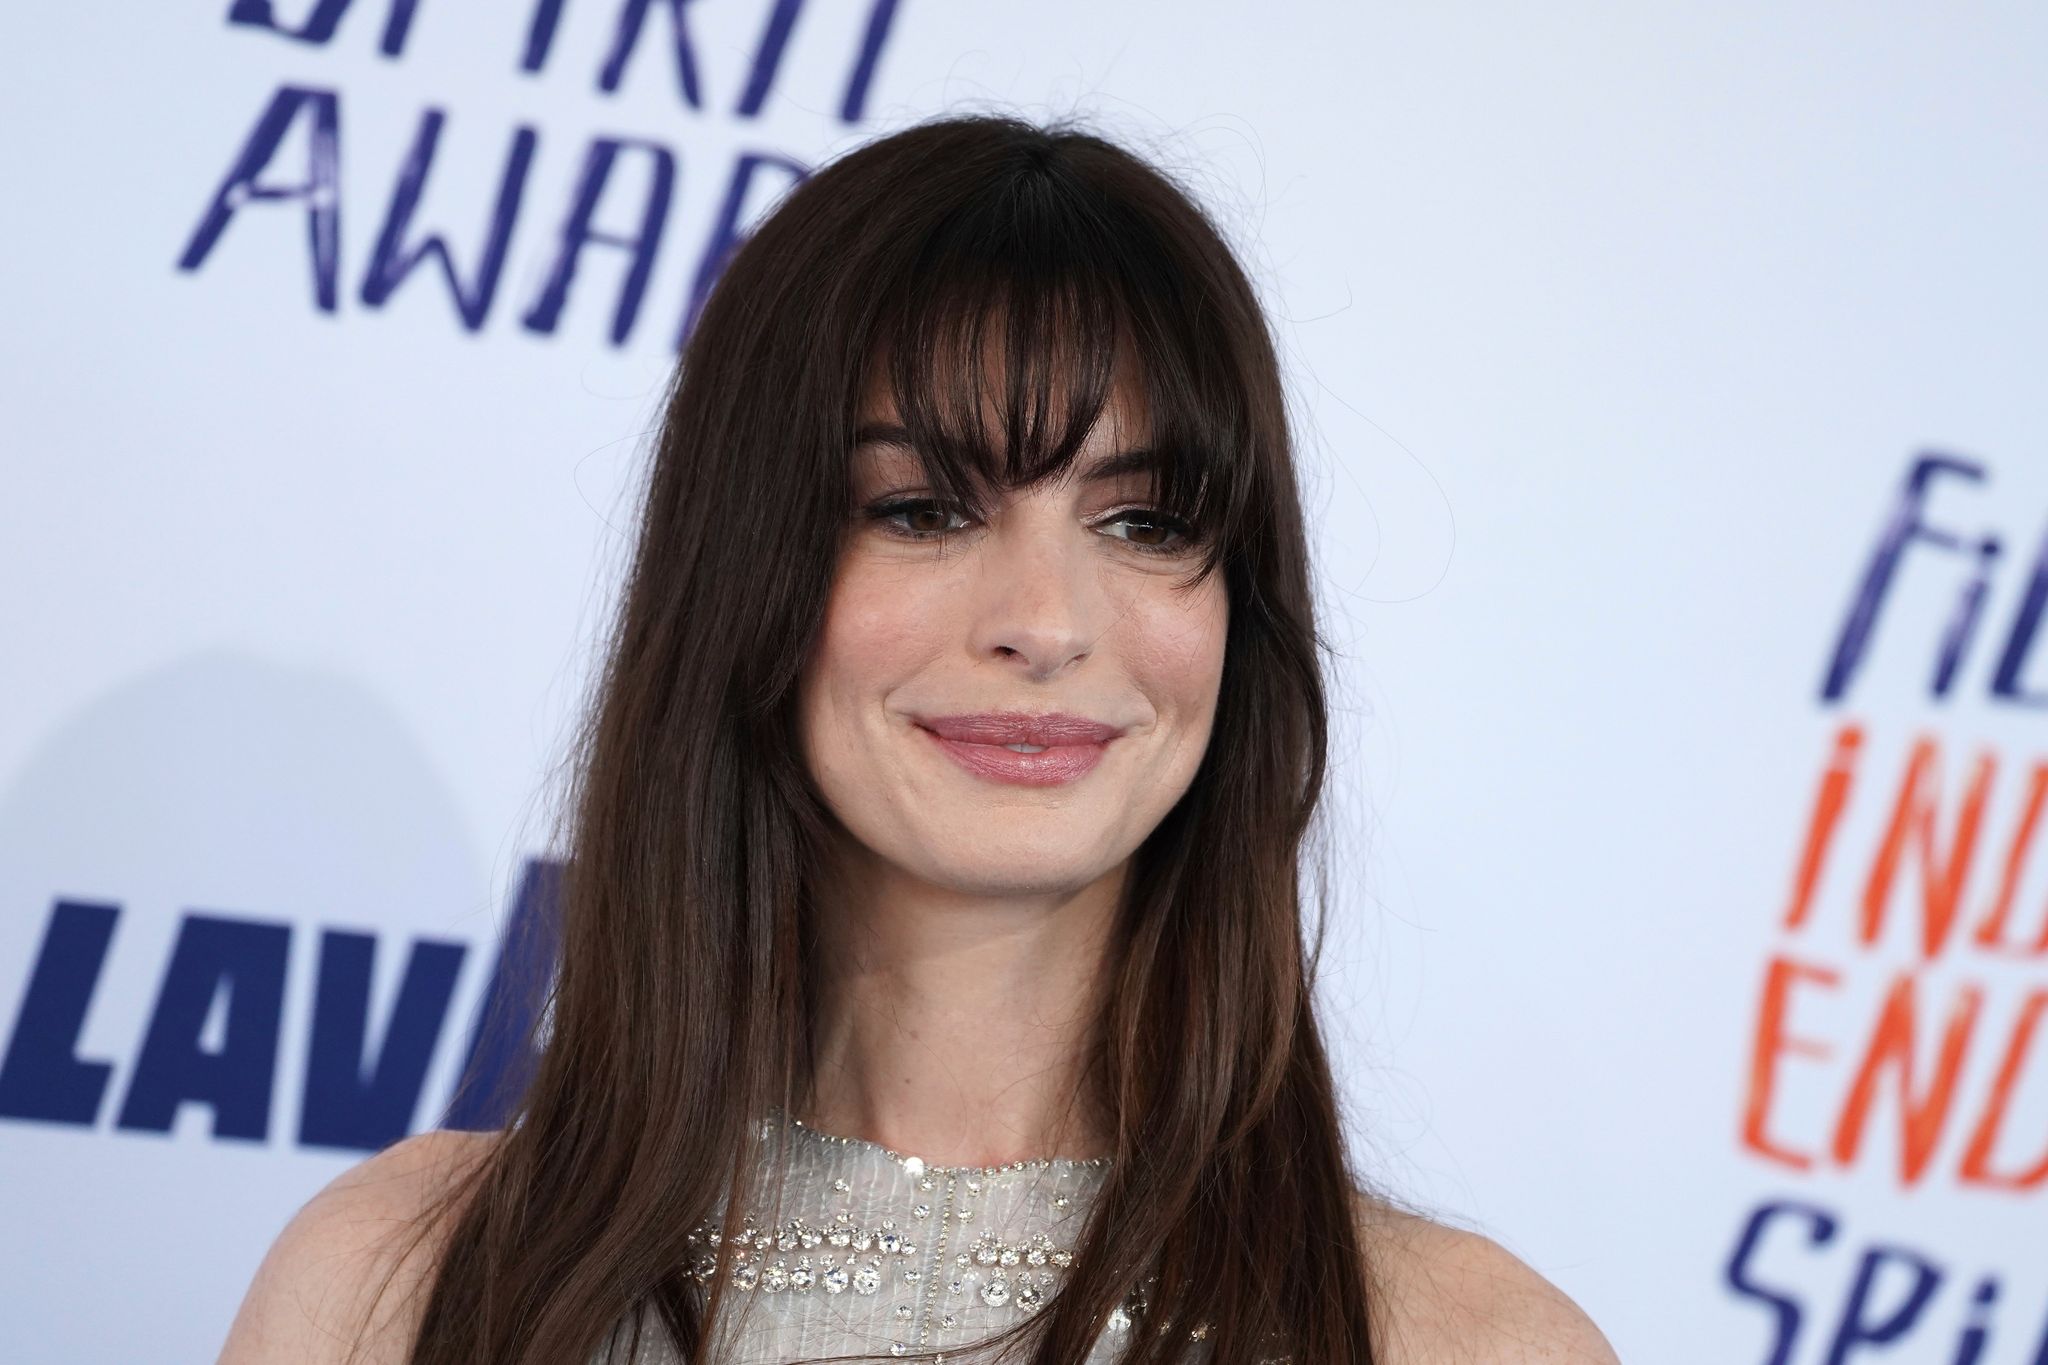 Anne Hathaway spielt in der romantischen Komädie «Als du mich sahst» mit.